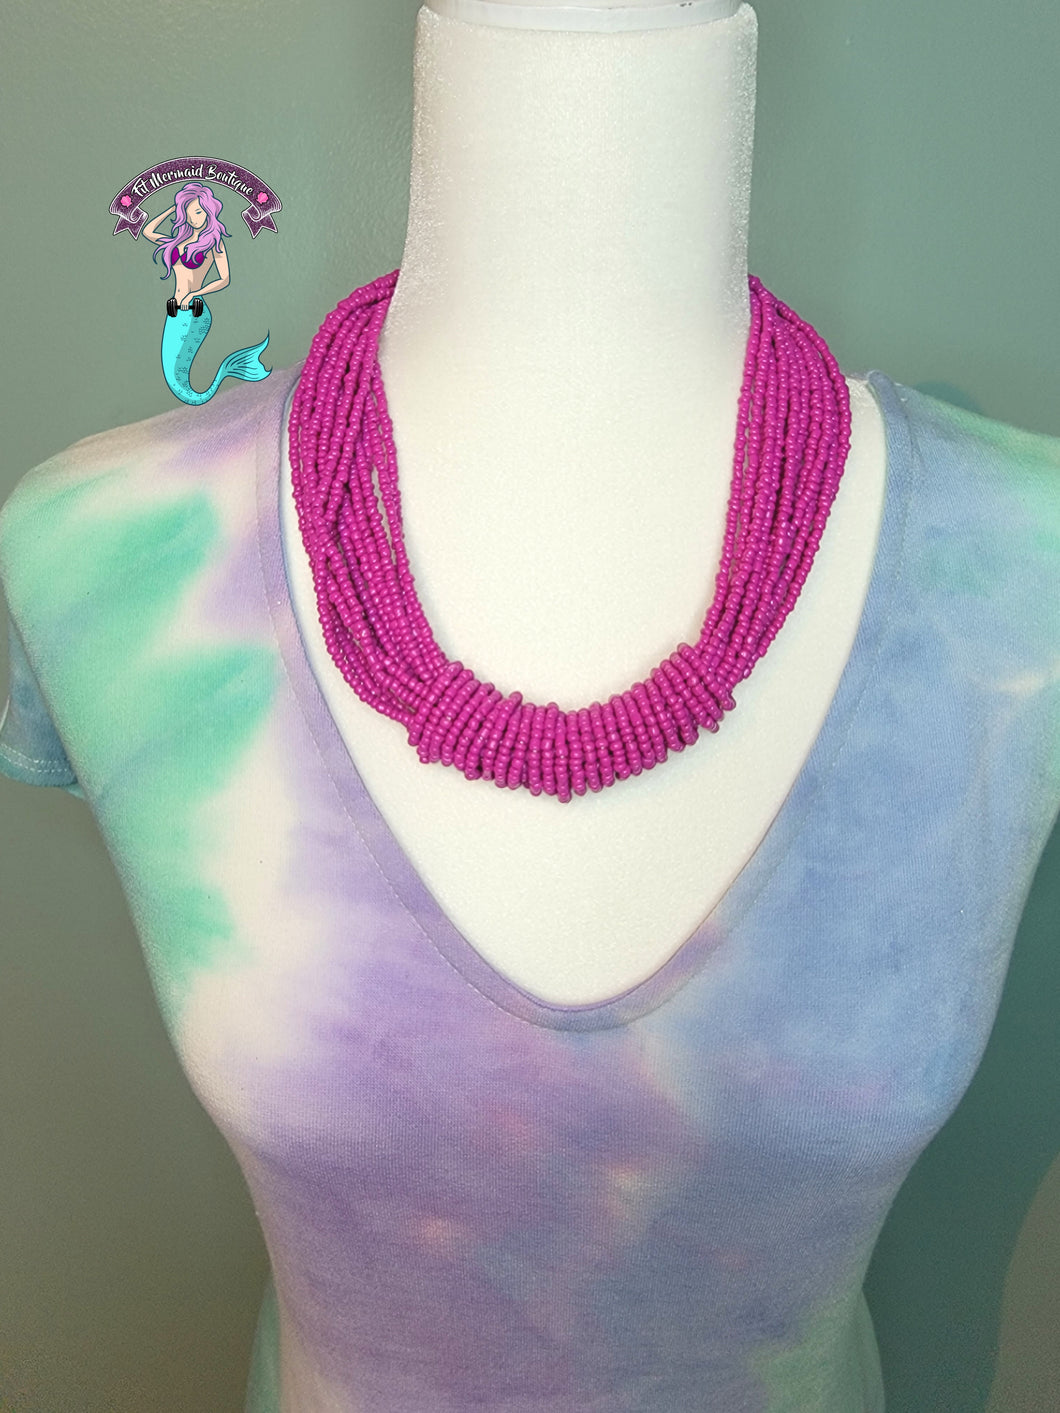 Mermaid colors necklace + earrings set